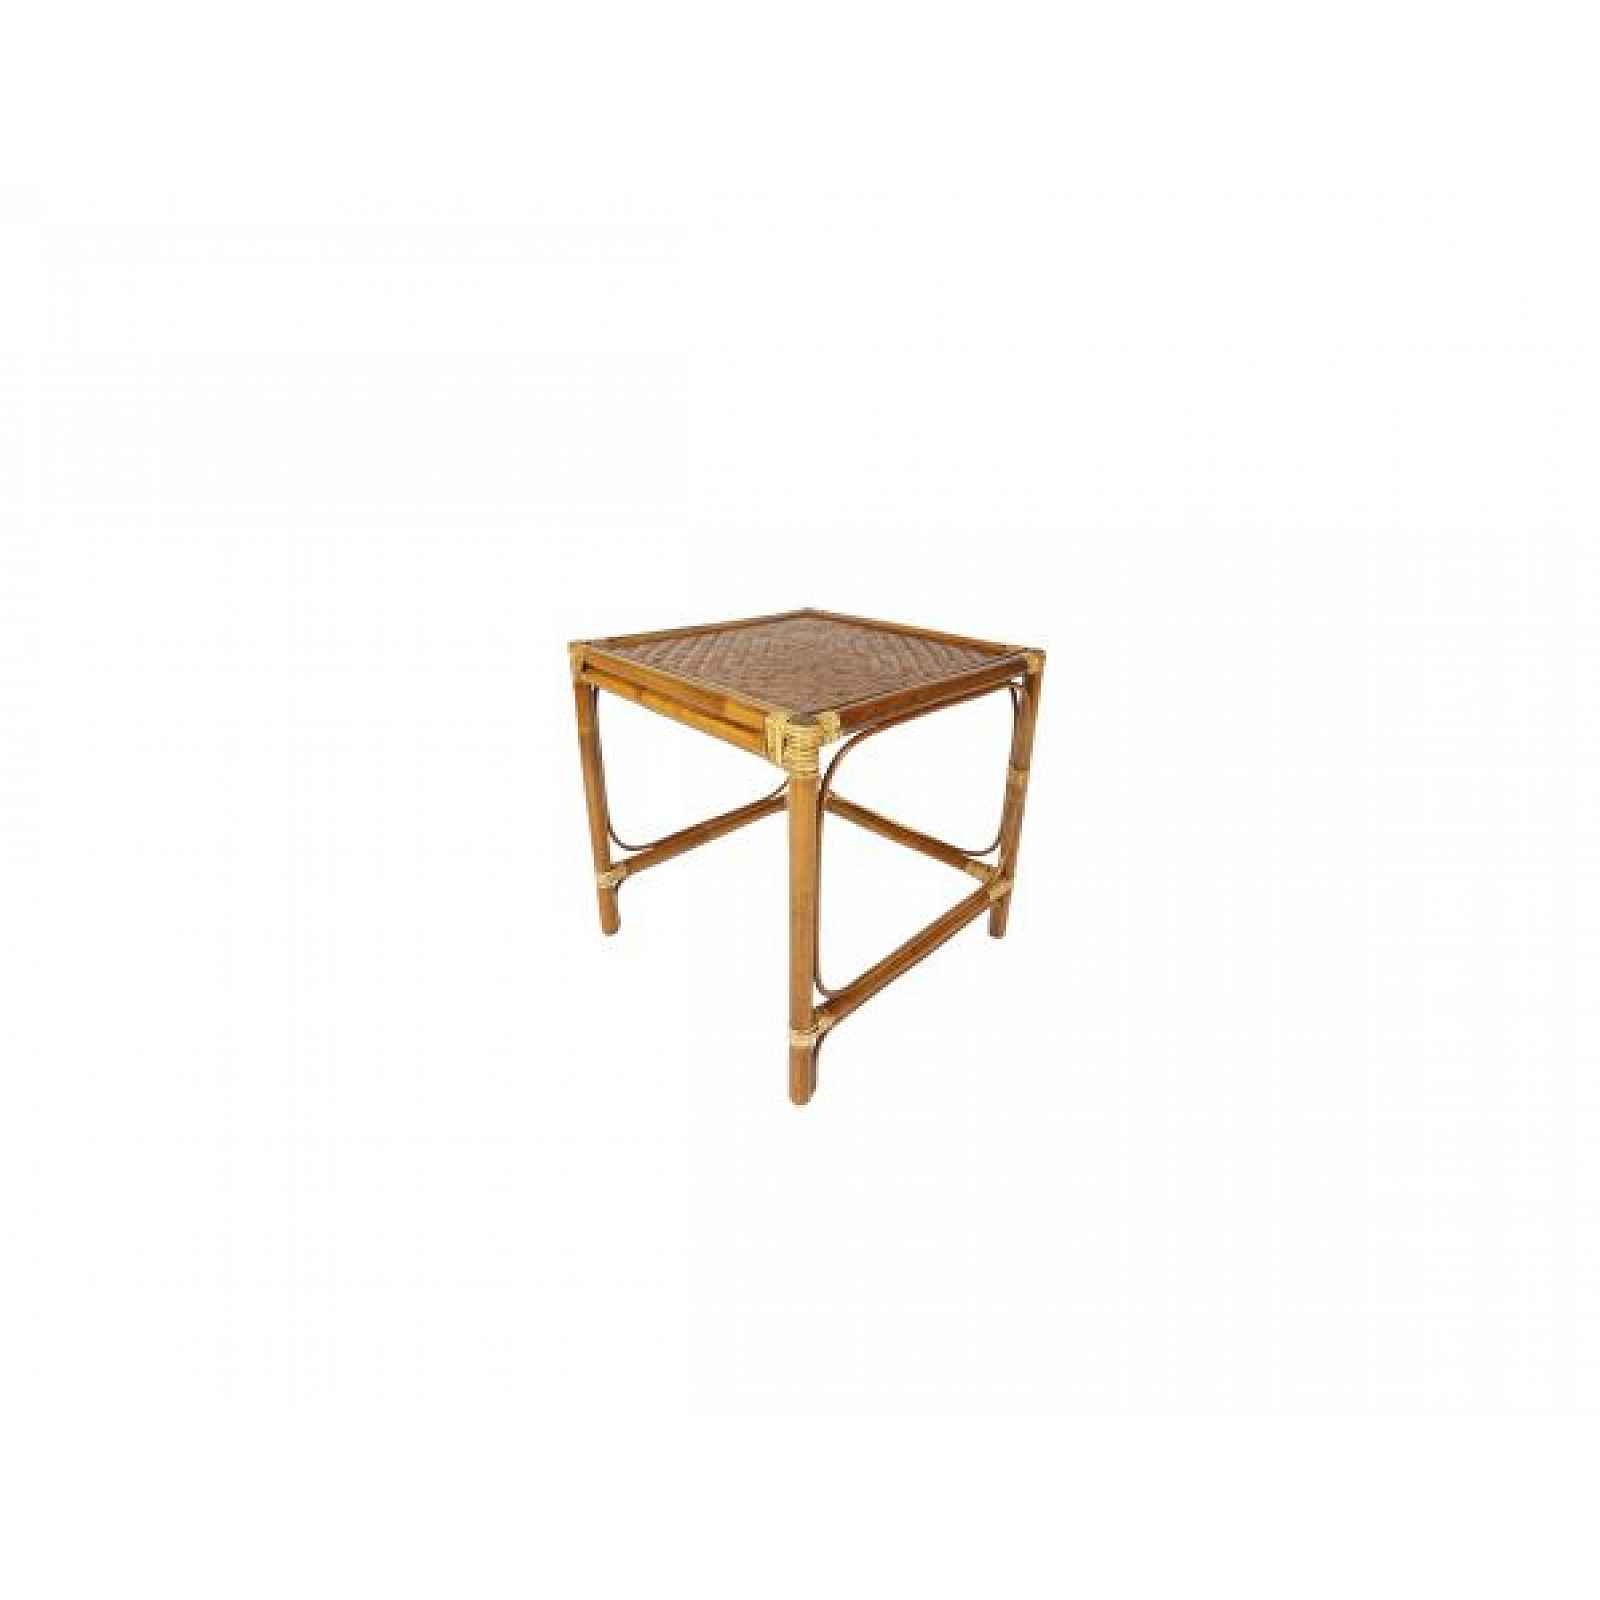 Ratanový stolek hranatý, světlý ratanový stolek malý